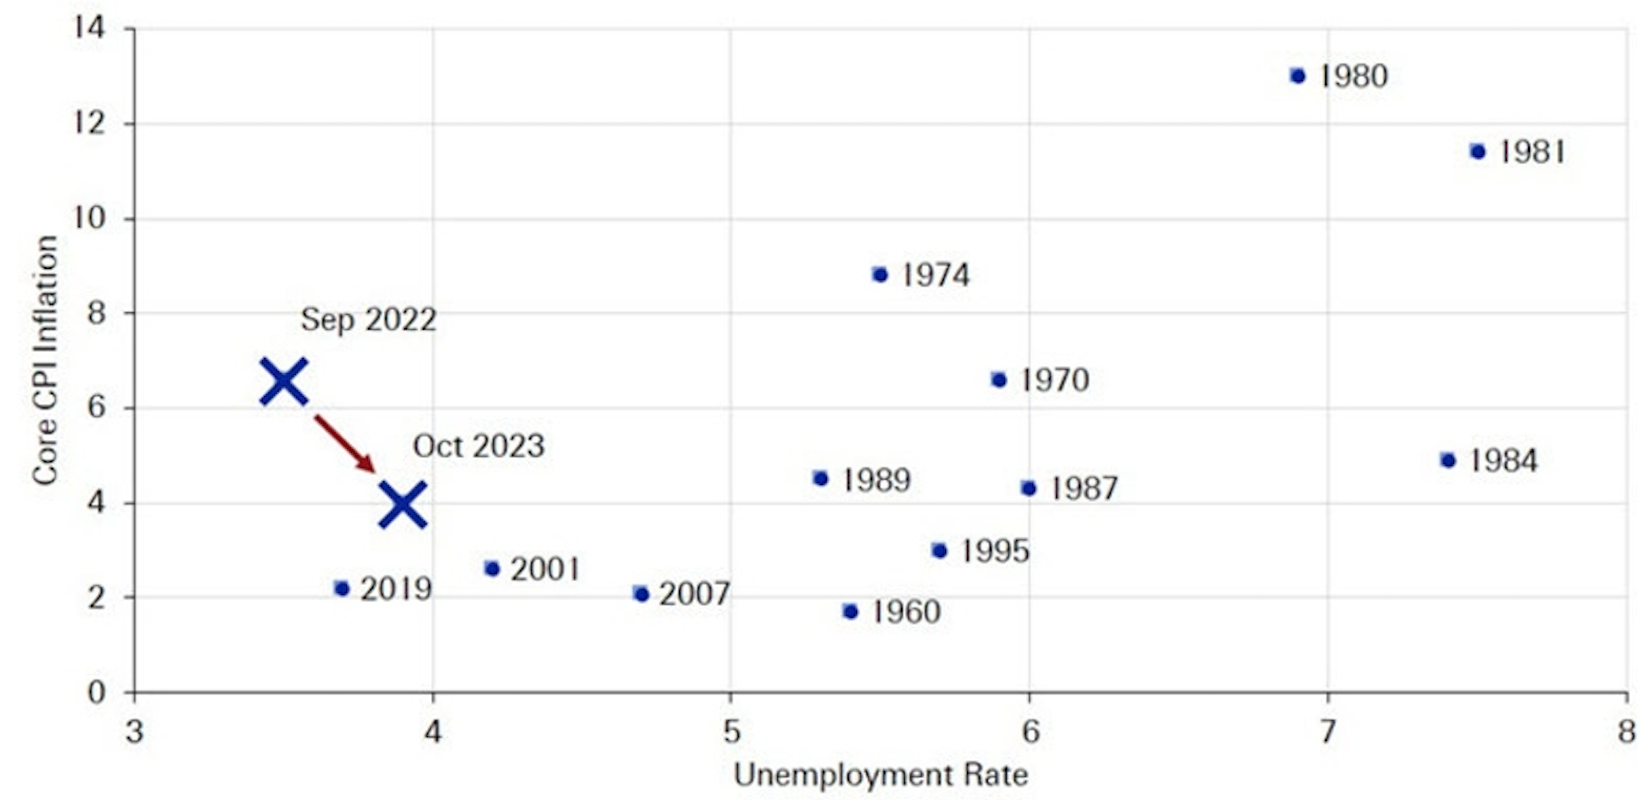 "Ngưỡng kích hoạt" FED hạ lãi suất của tỷ lệ lạm phát và thất nghiệp là ở đâu, lịch sử cho thấy điều gì?